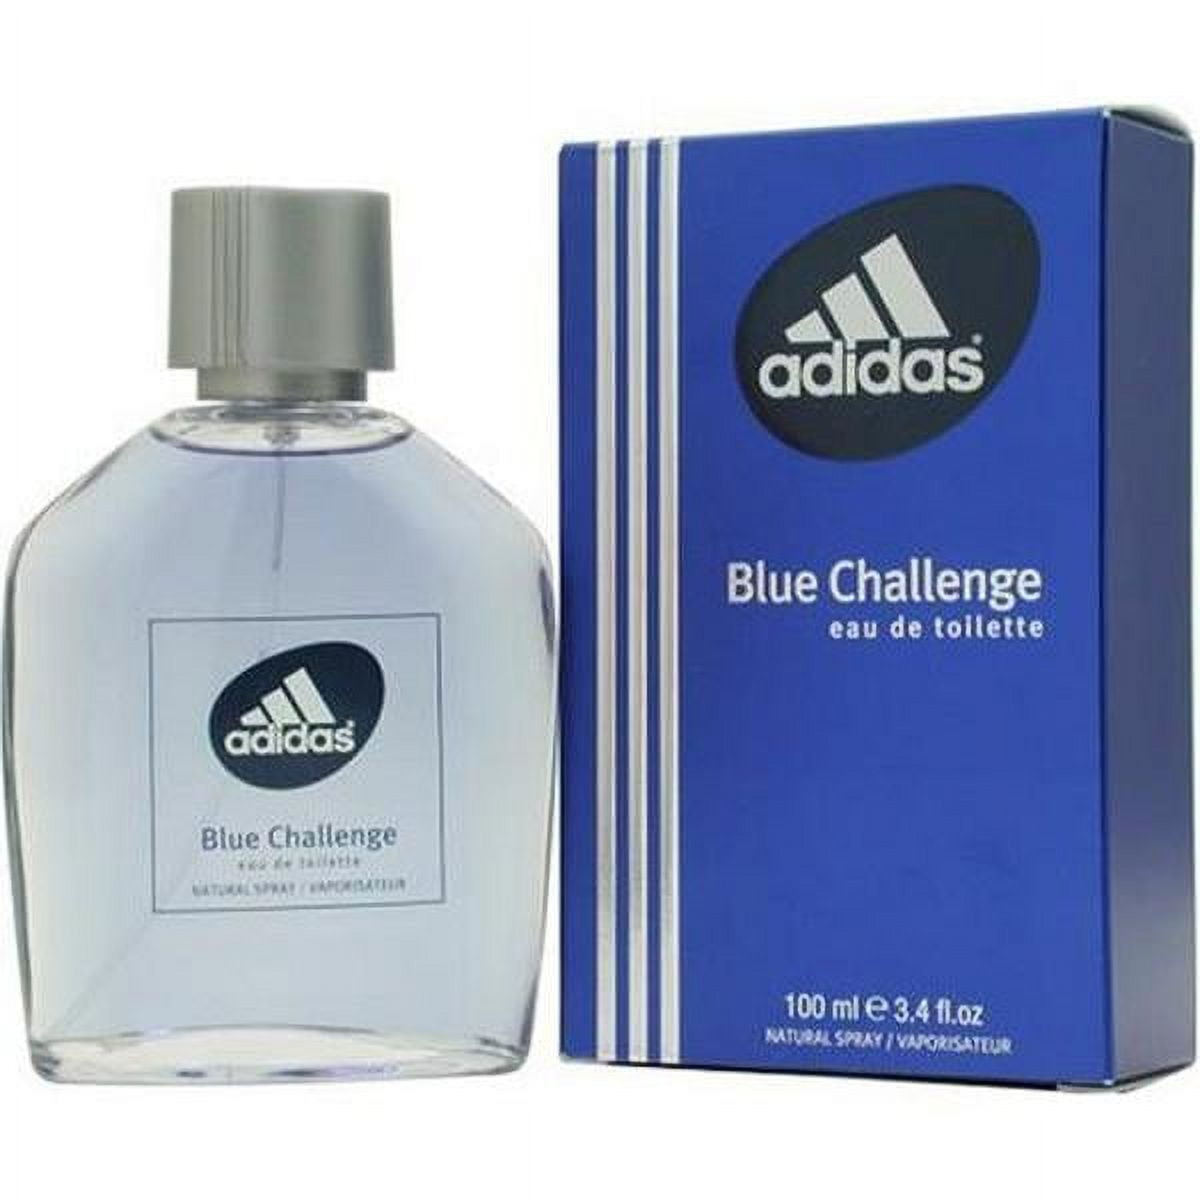 chanel bleu perfume for men travel